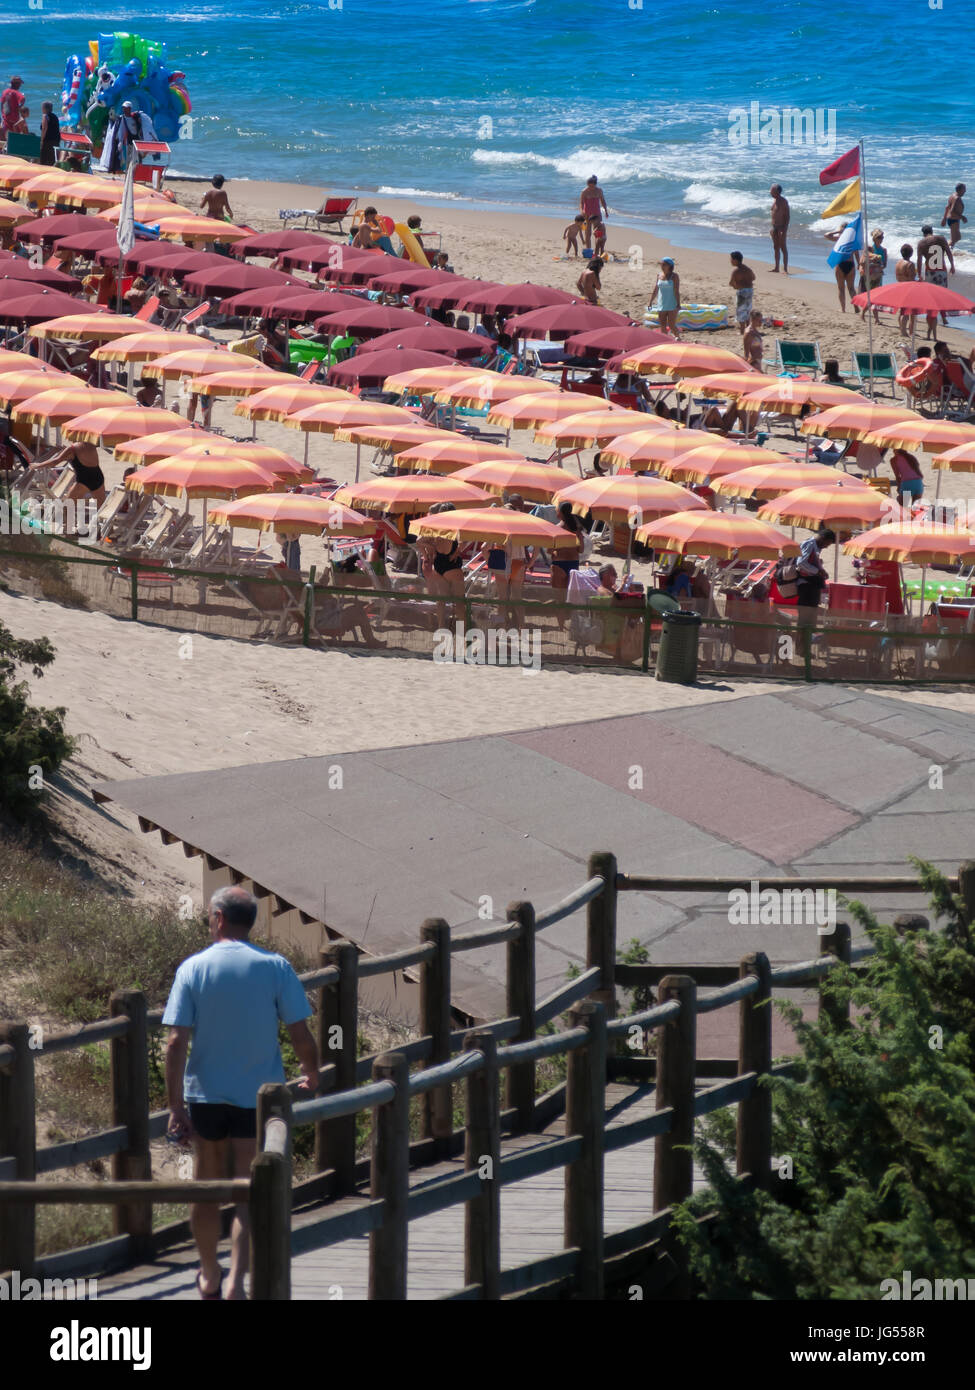 La spiaggia di Sabaudia, Latina, Lazio, Italia. Una bellissima spiaggia ideale per famiglie. La spiaggia è riempito con ombrelli e ombrelloni per gli ospiti dell'hotel. Foto Stock